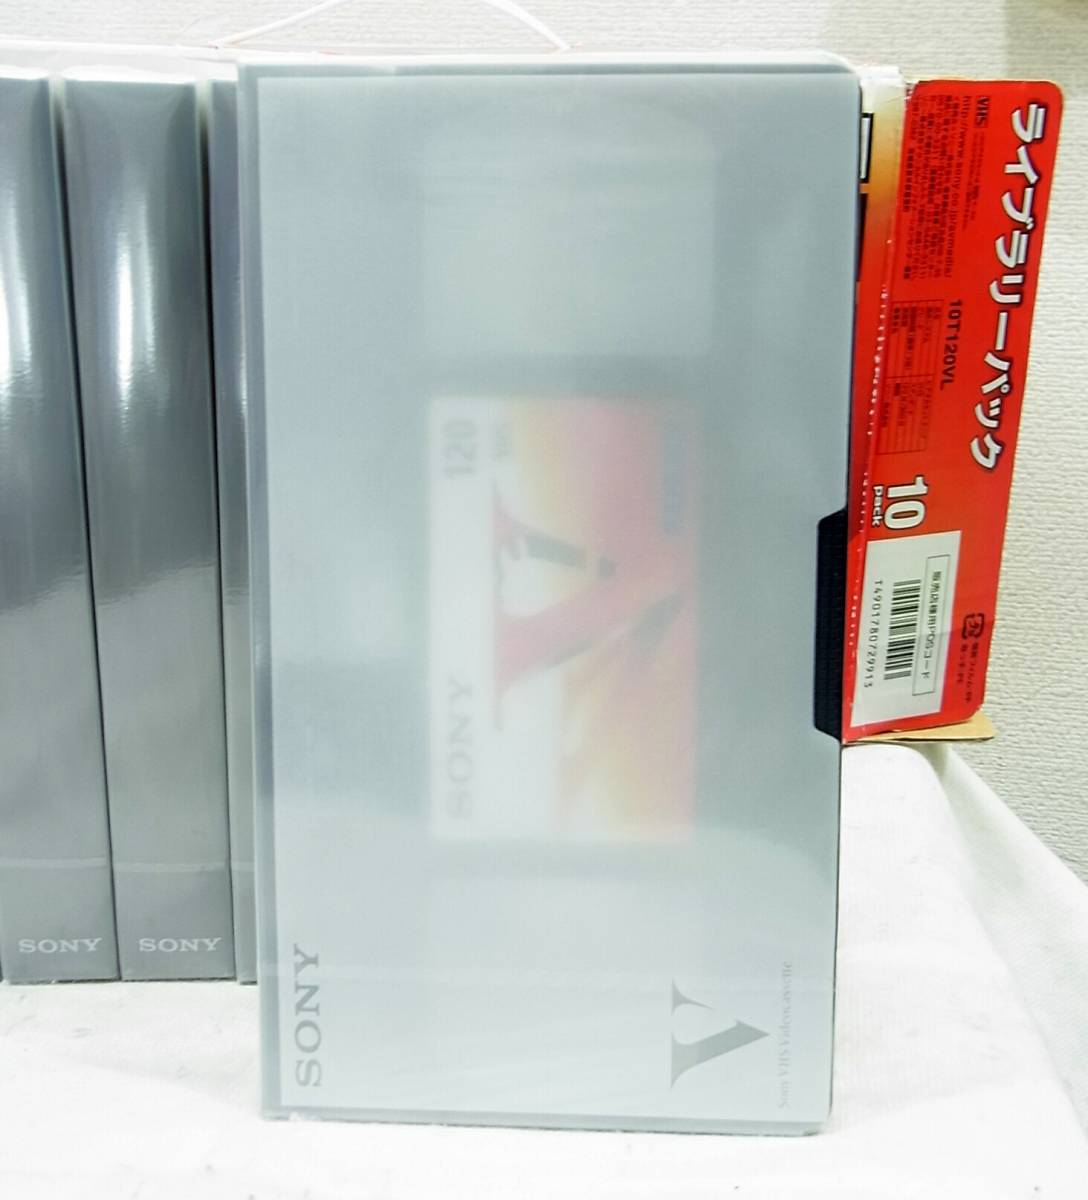  есть перевод новый товар SONY видеозапись для VHS кассетная лента 9 шт. комплект стандарт 2 час (120 минут ) 3 раз режим 6 час (360 минут ) стандартный 10T120VL 9 шт ввод Sony 9 шт 